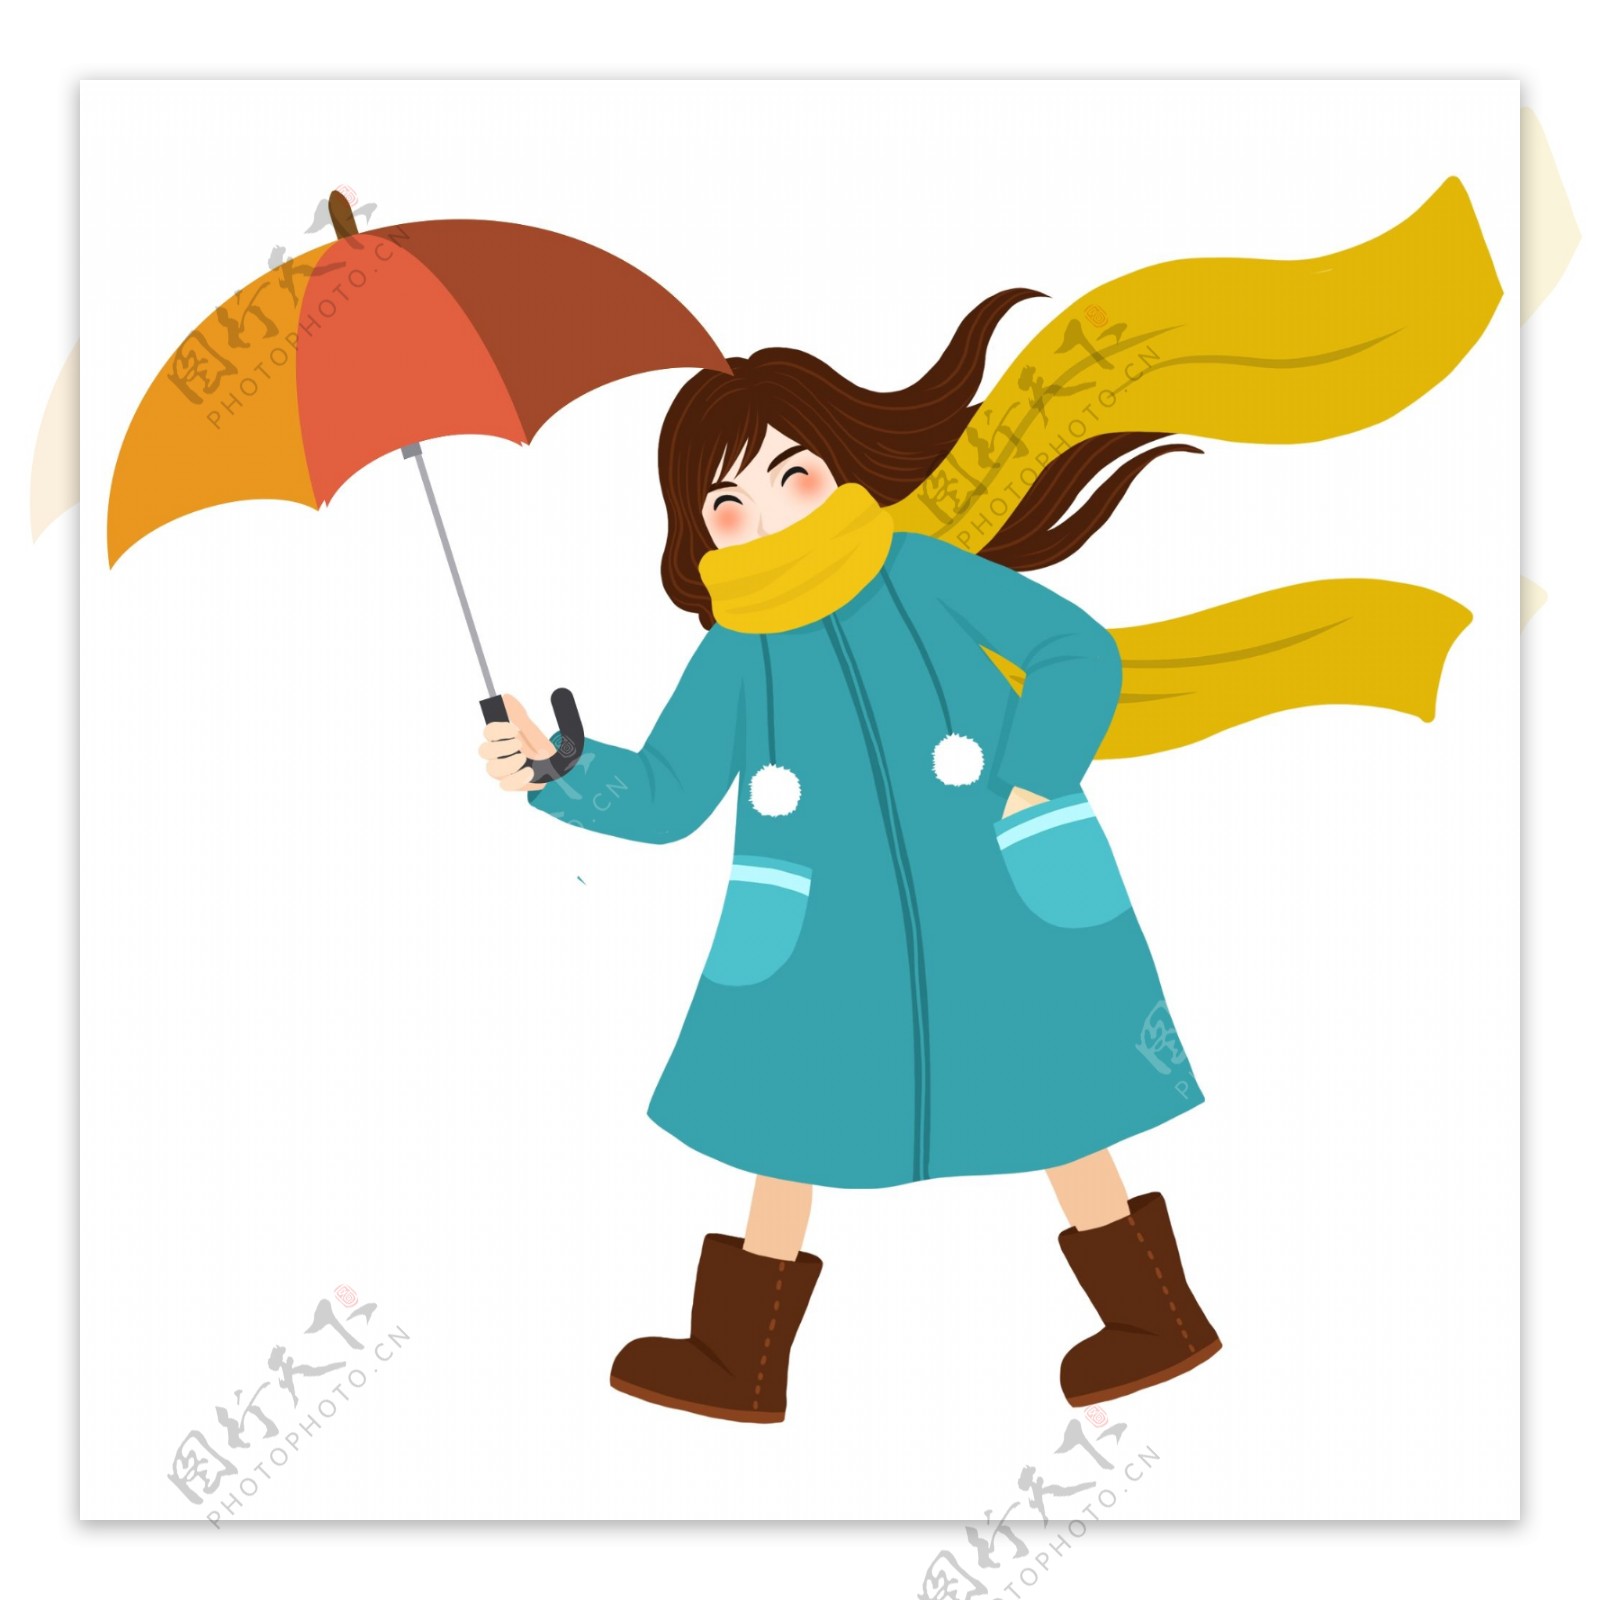 冬季撑伞的少女清新唯美设计可商用元素